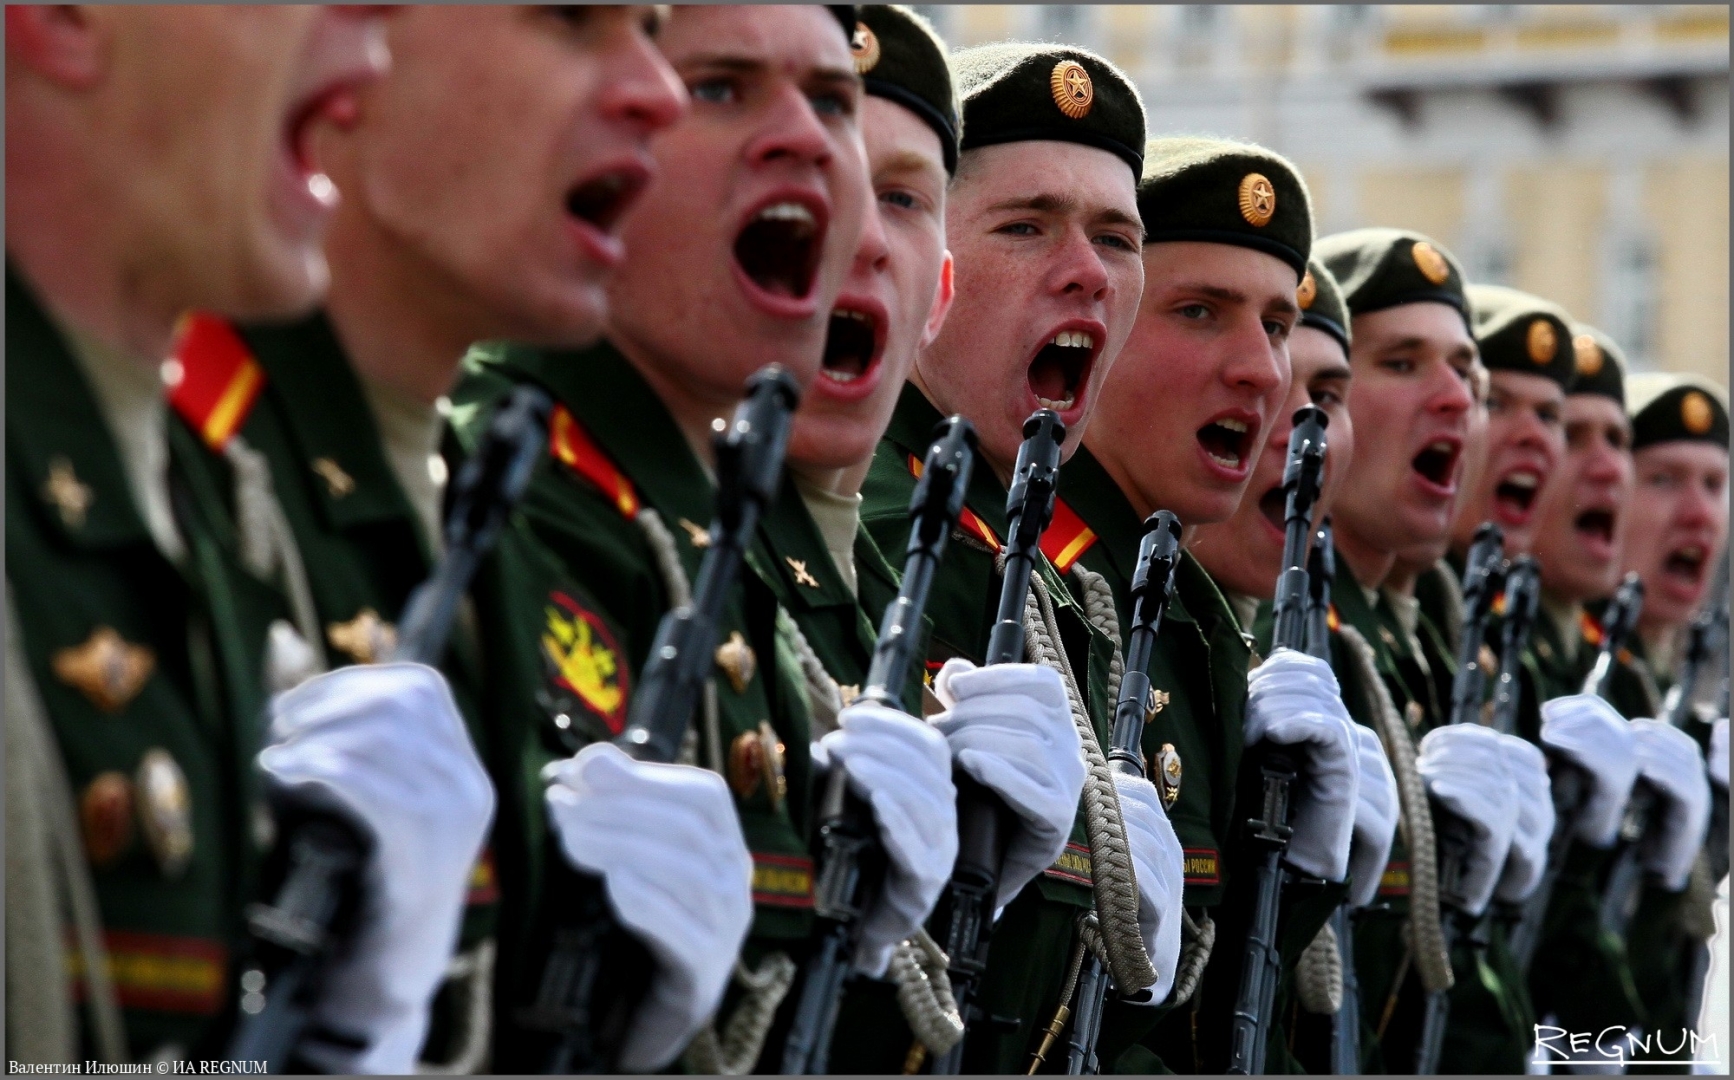 Рота поет. Солдаты на параде. Российский солдат на параде. Строй солдат на параде. Солдаты на параде кричат ура.